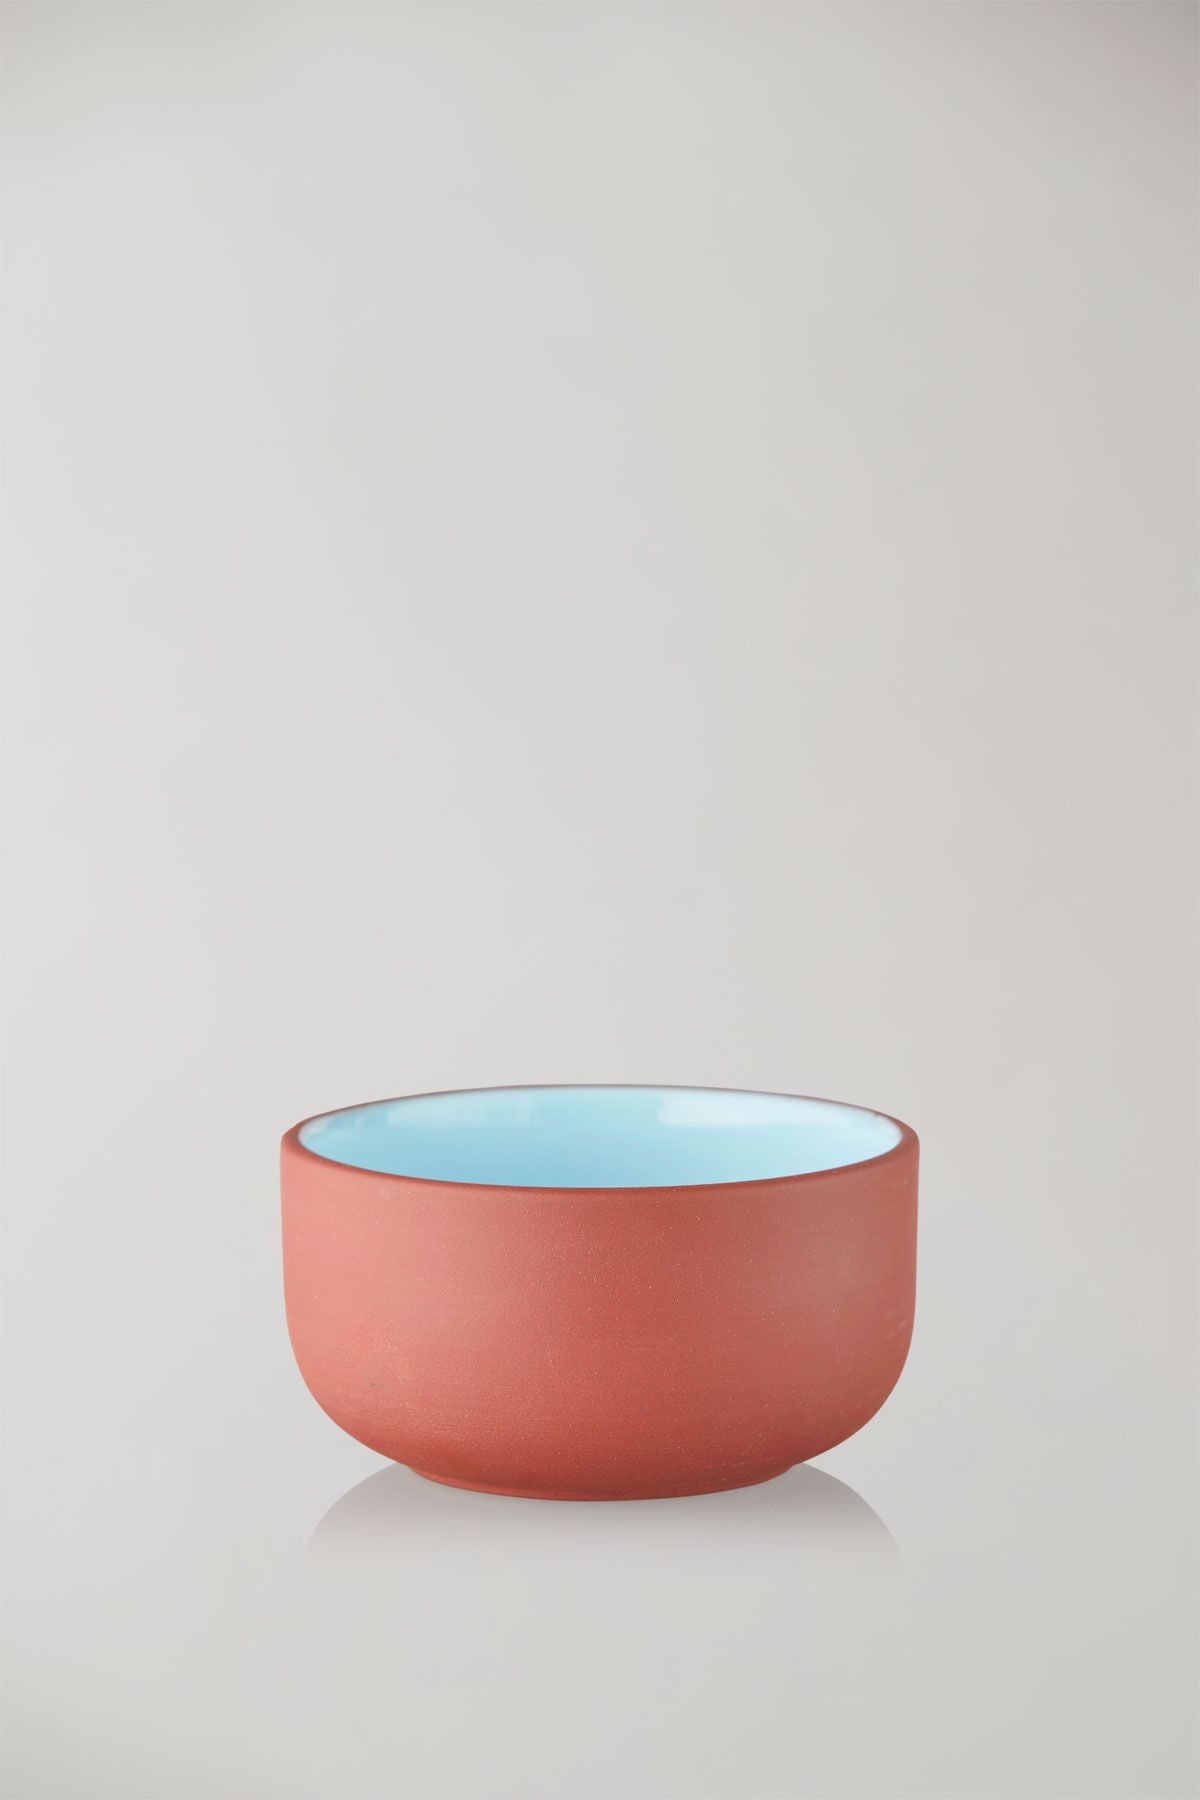 Studio über Clayware -Set von 2 Schalen, Terrakotta/Blau